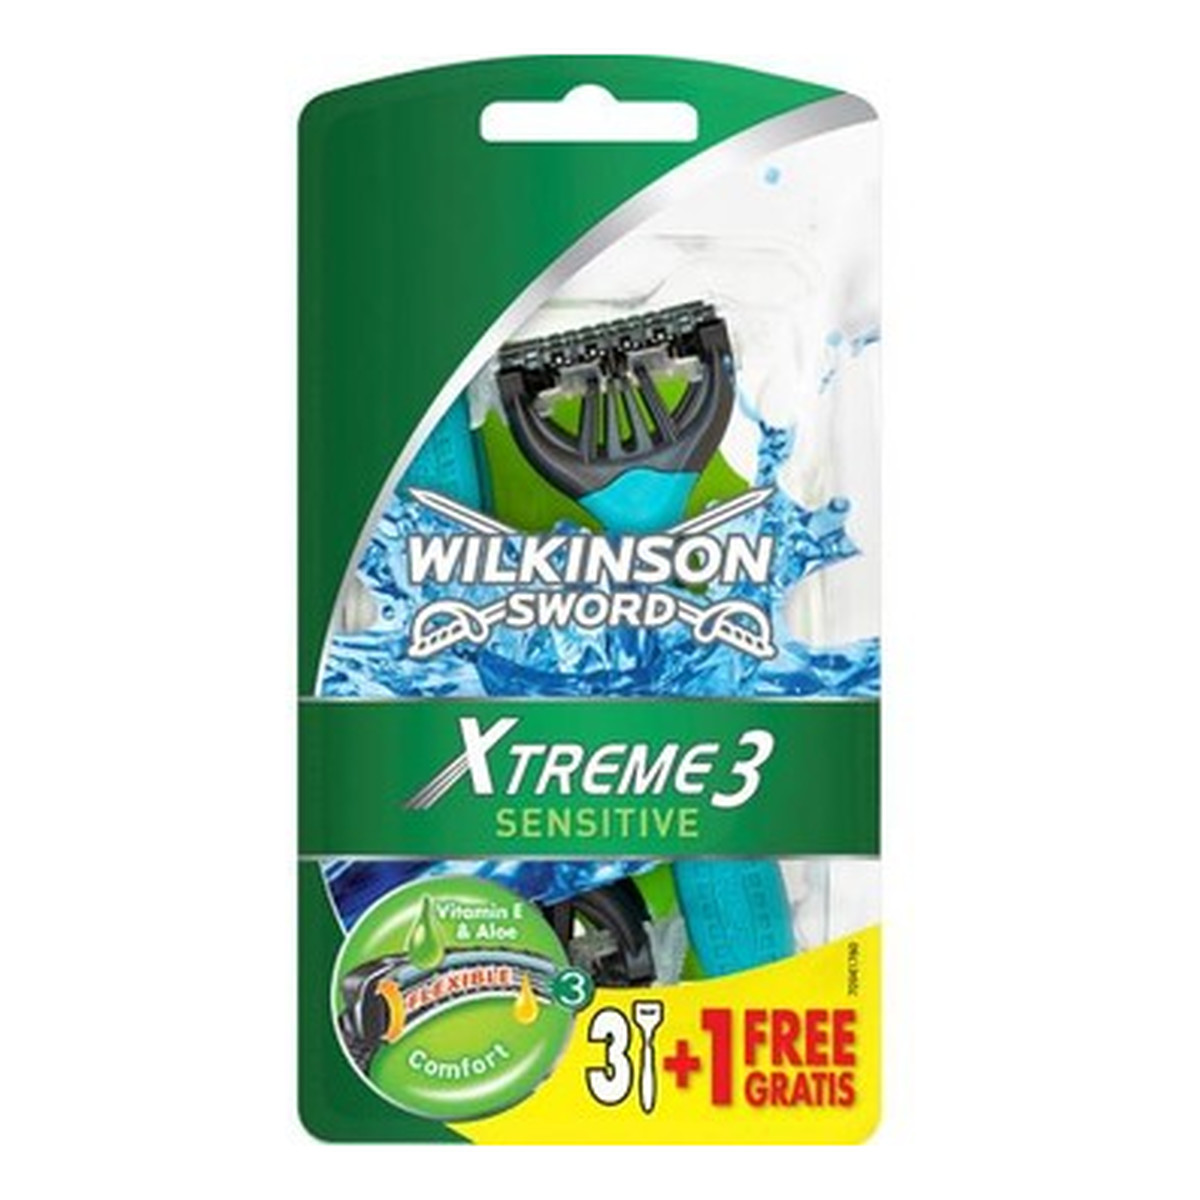 Wilkinson Sensitive Xtreme 3 Maszynki Jednorazowe 3+1 szt. Gratis